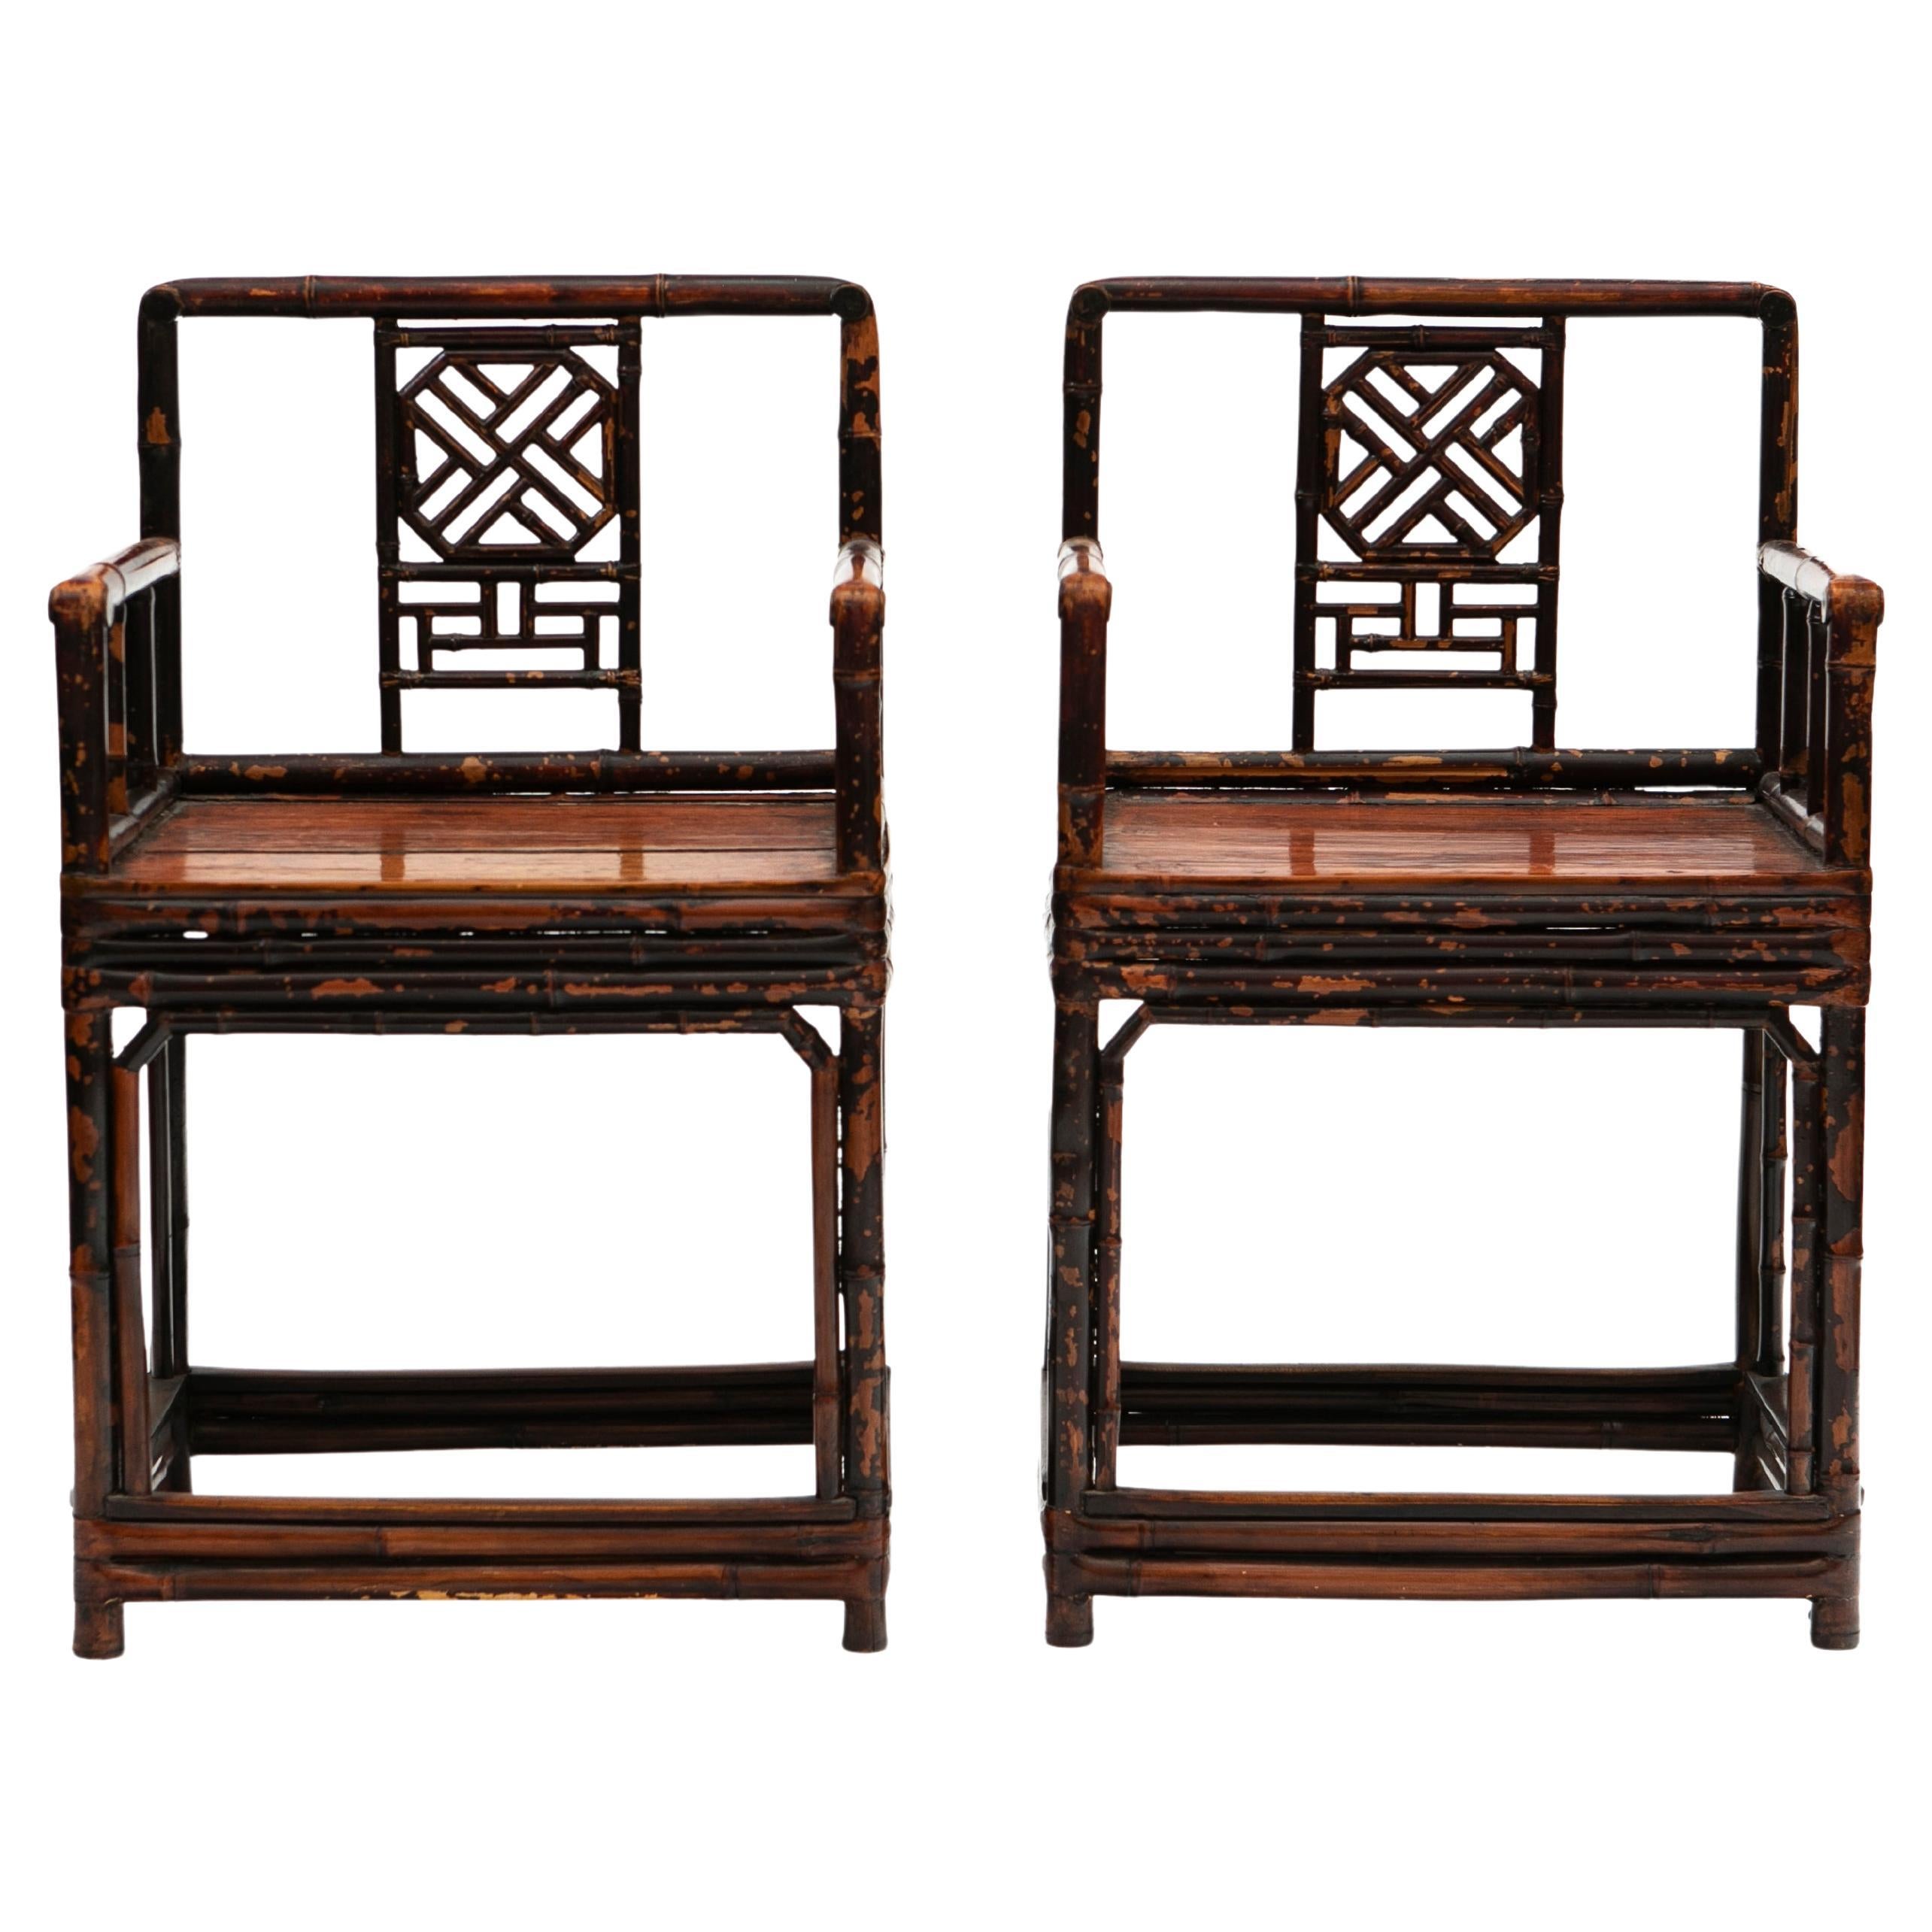 Paire de fauteuils en bambou de la période Qing du 19ème siècle